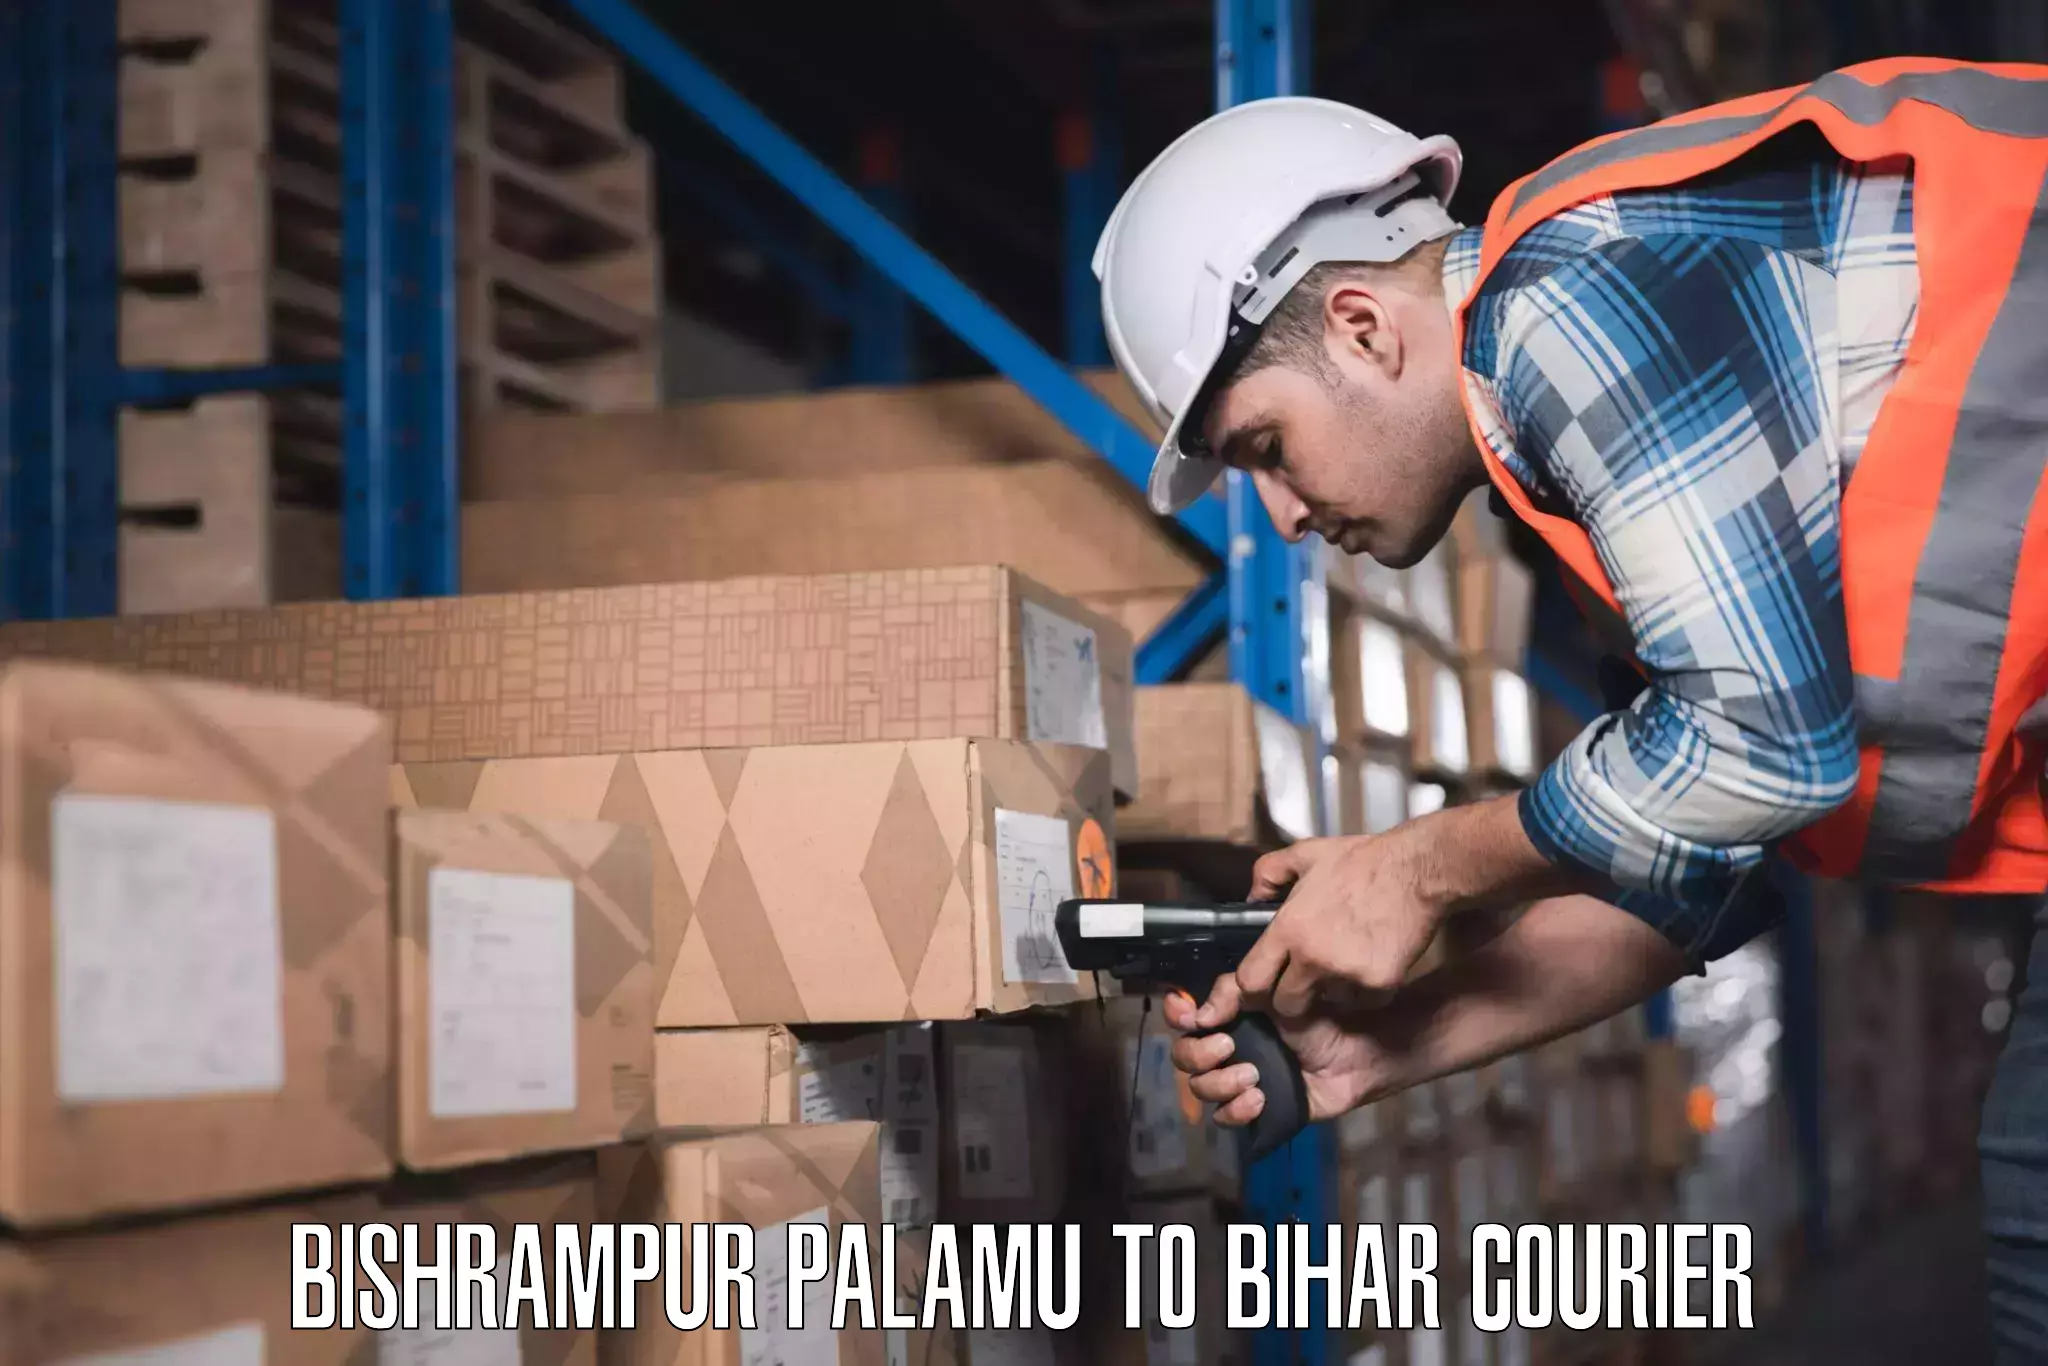 Personal effects shipping Bishrampur Palamu to Katoria